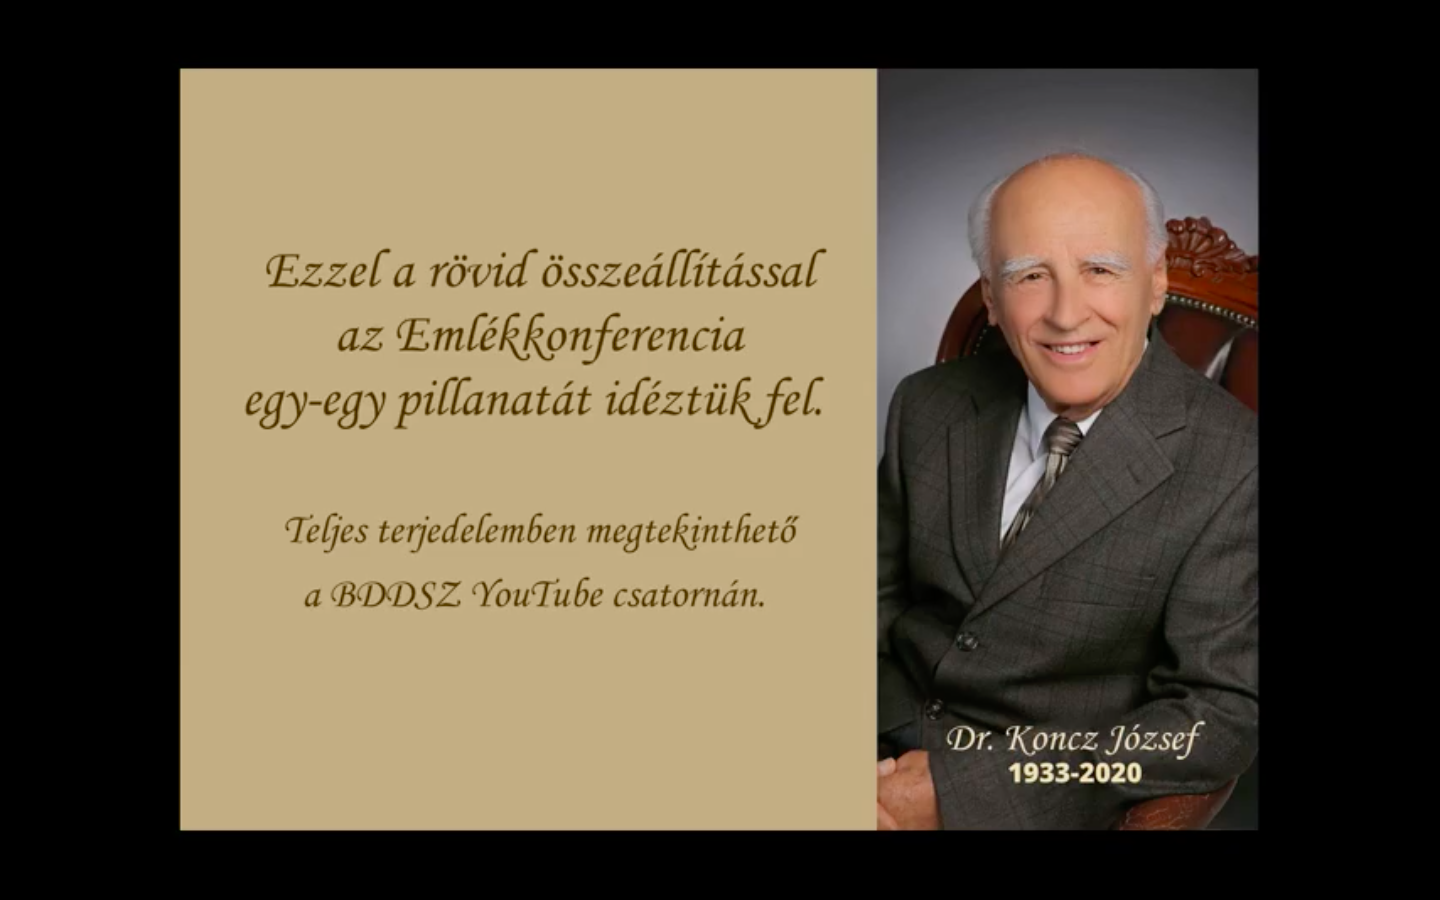 Dr. Koncz József emlékkonferencia videóösszefoglaló